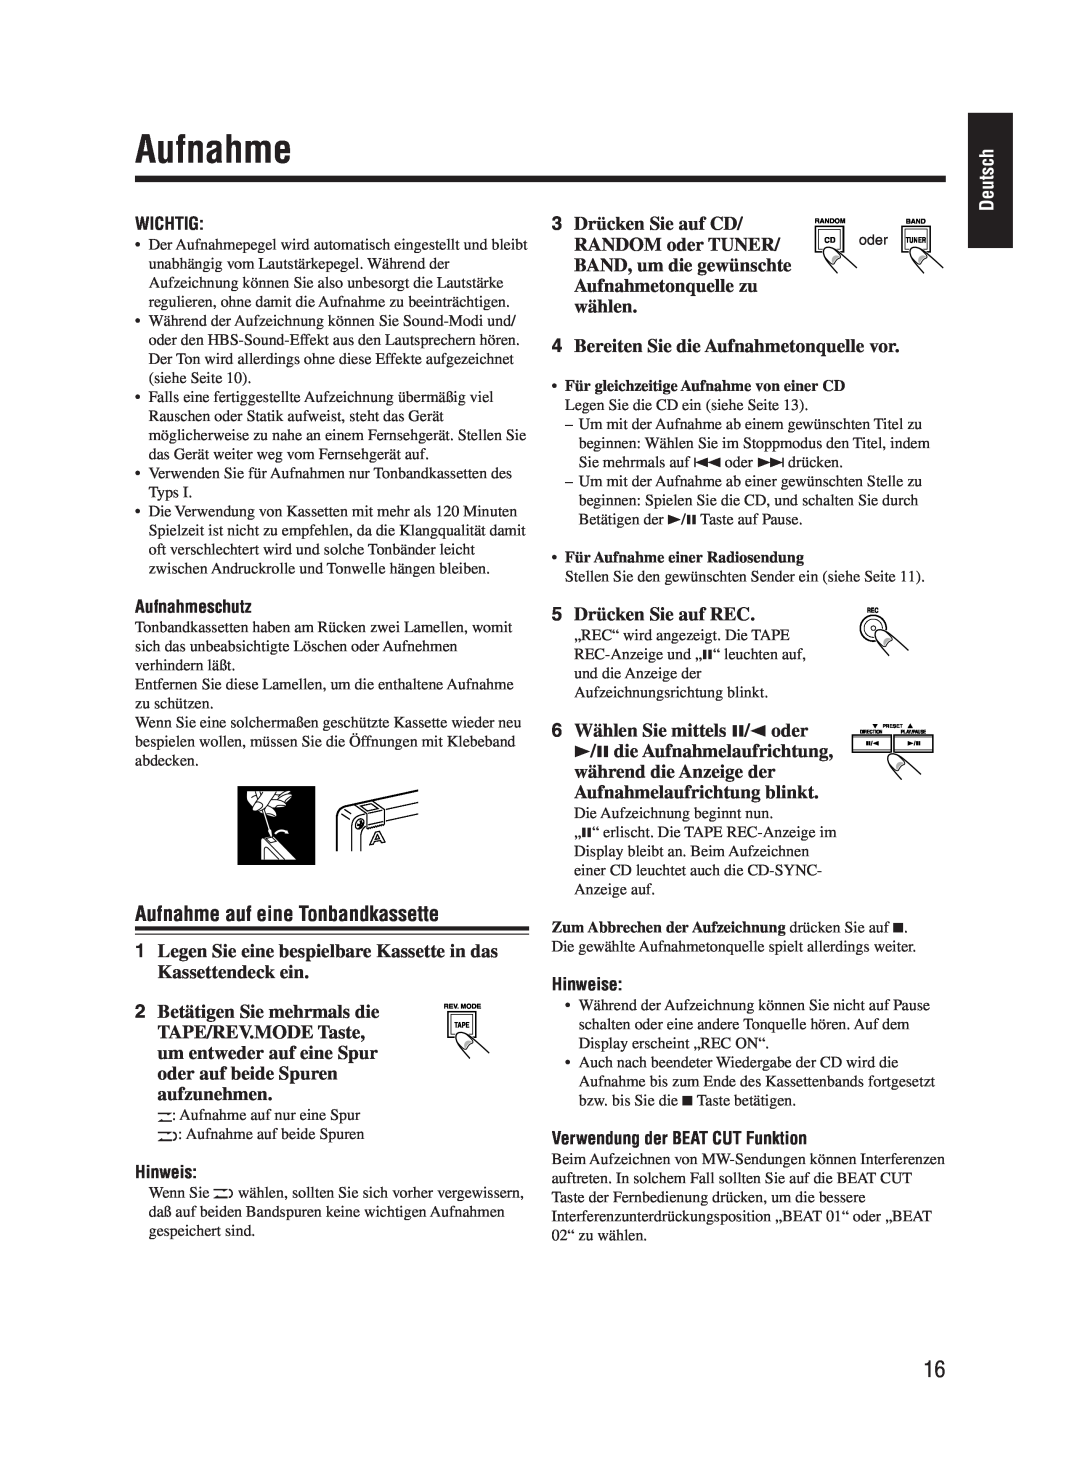 JVC UX-M55 manual Aufnahme auf eine Tonbandkassette, Deutsch 